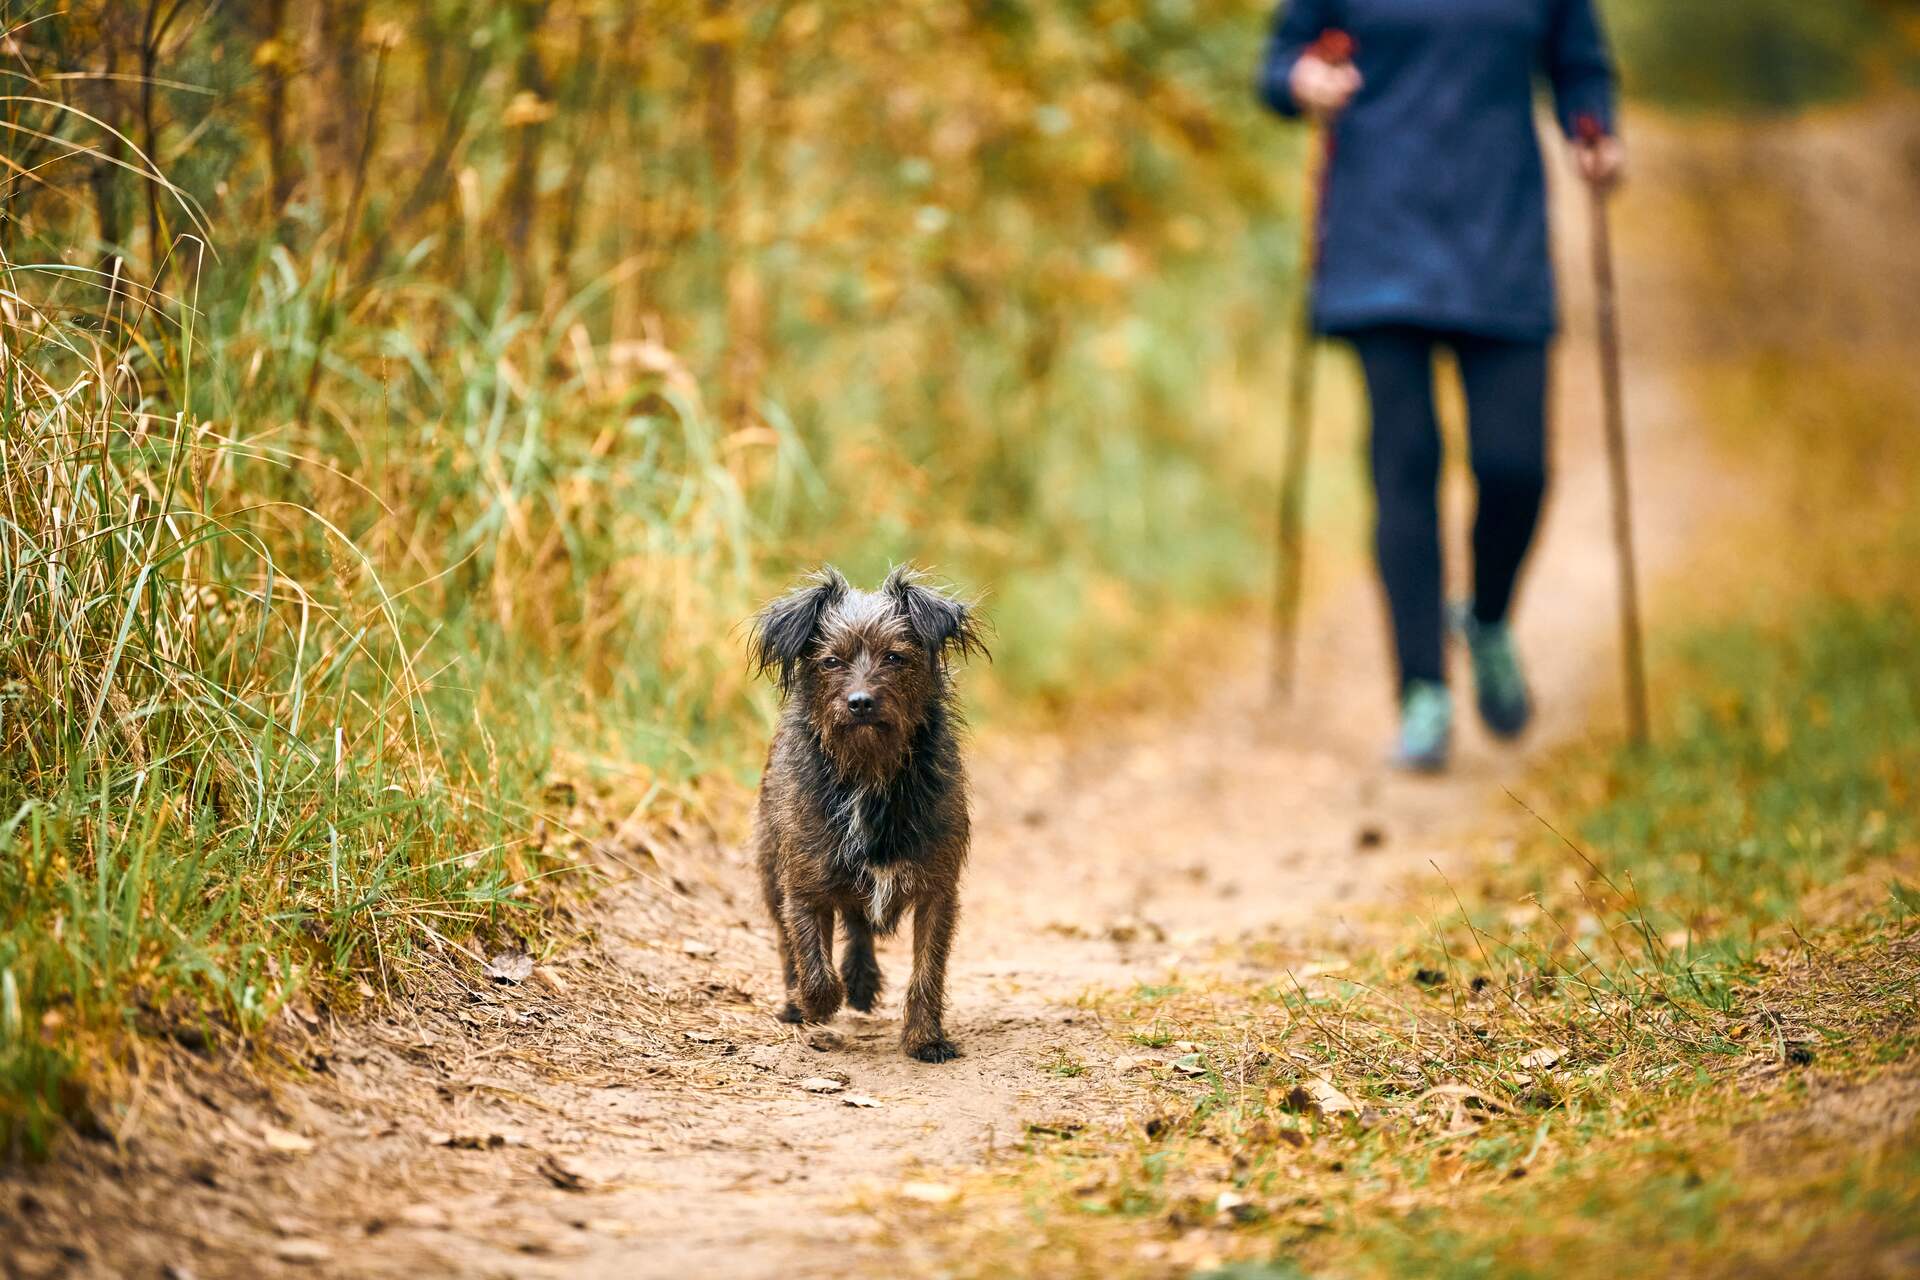 A woman following a dog on a walk